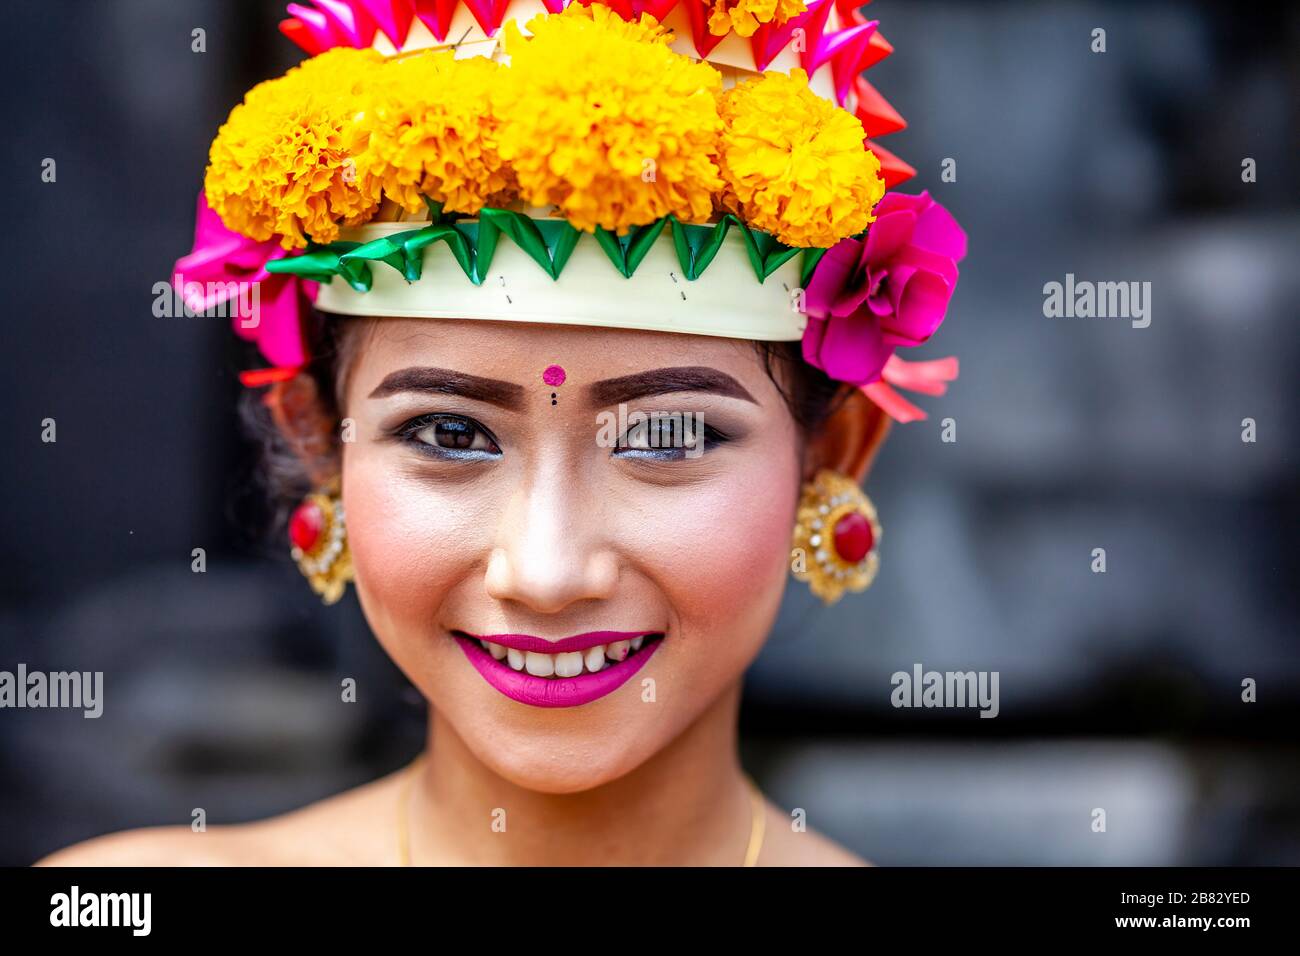 Eine junge balinesische Hindu-Frau im Festival Kostüm bei der Zeremonie ...